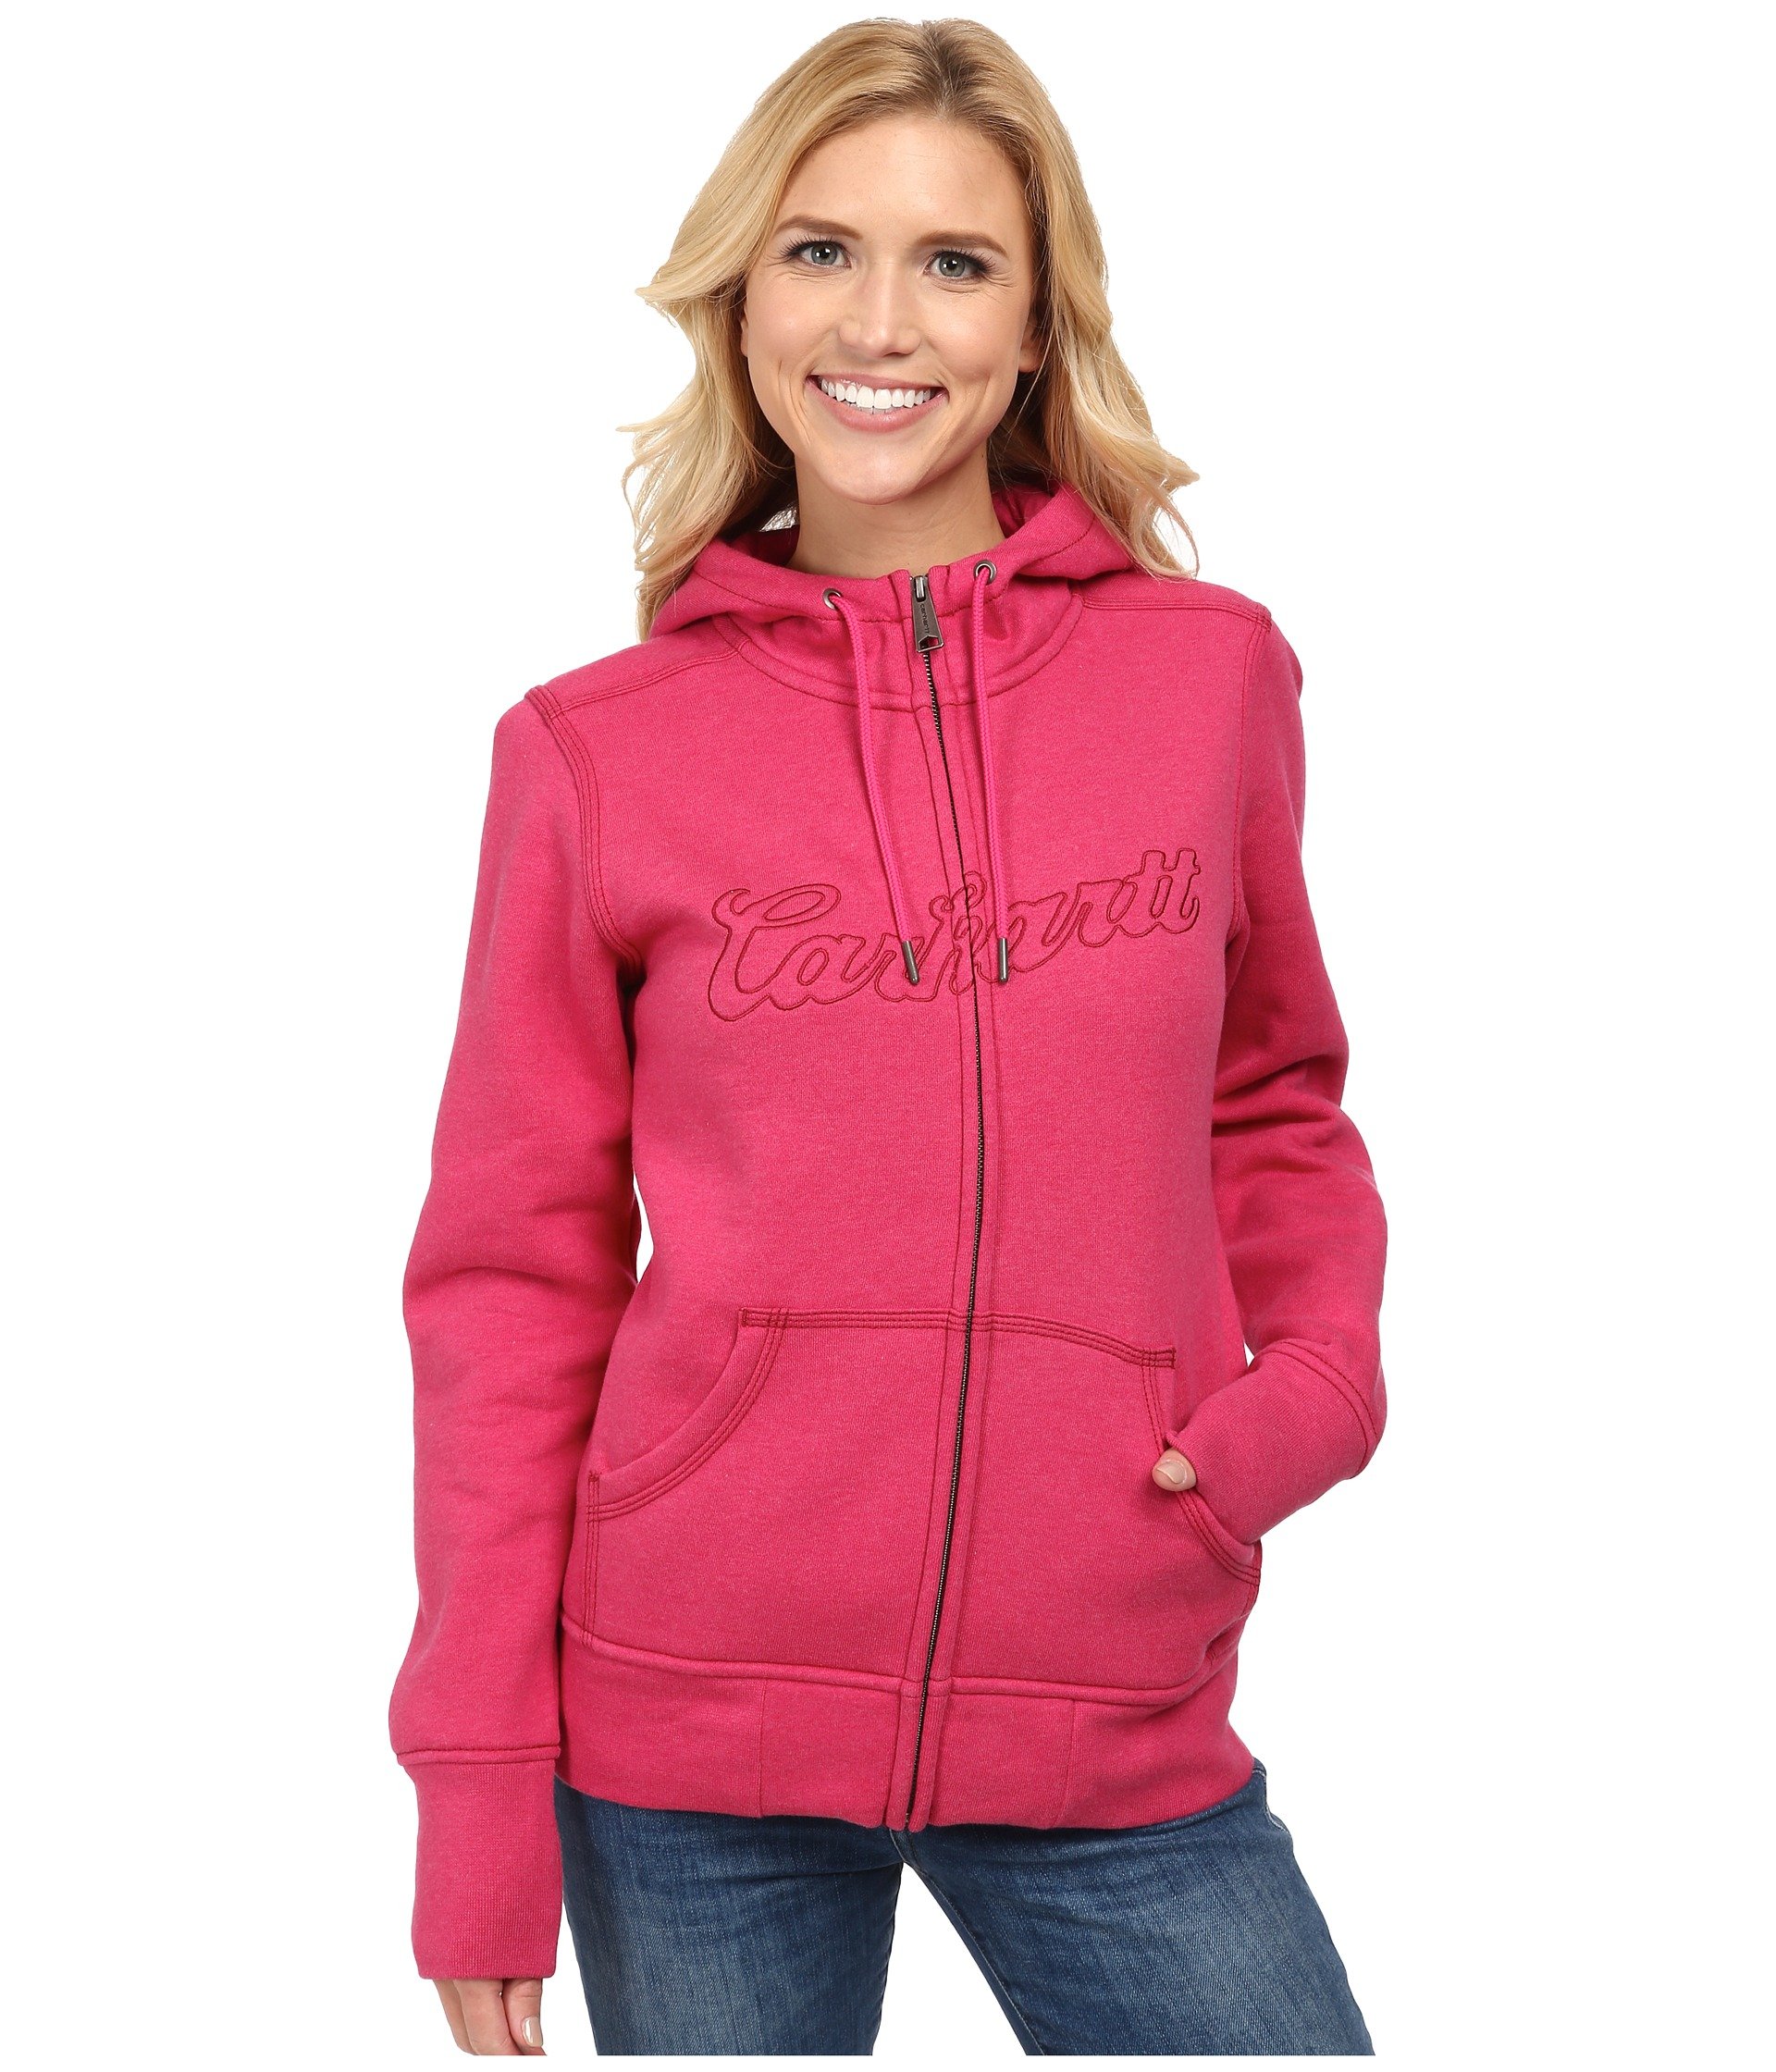 Lyst - Carhartt Clarksburg Zip Front Sweatshirt in Pink